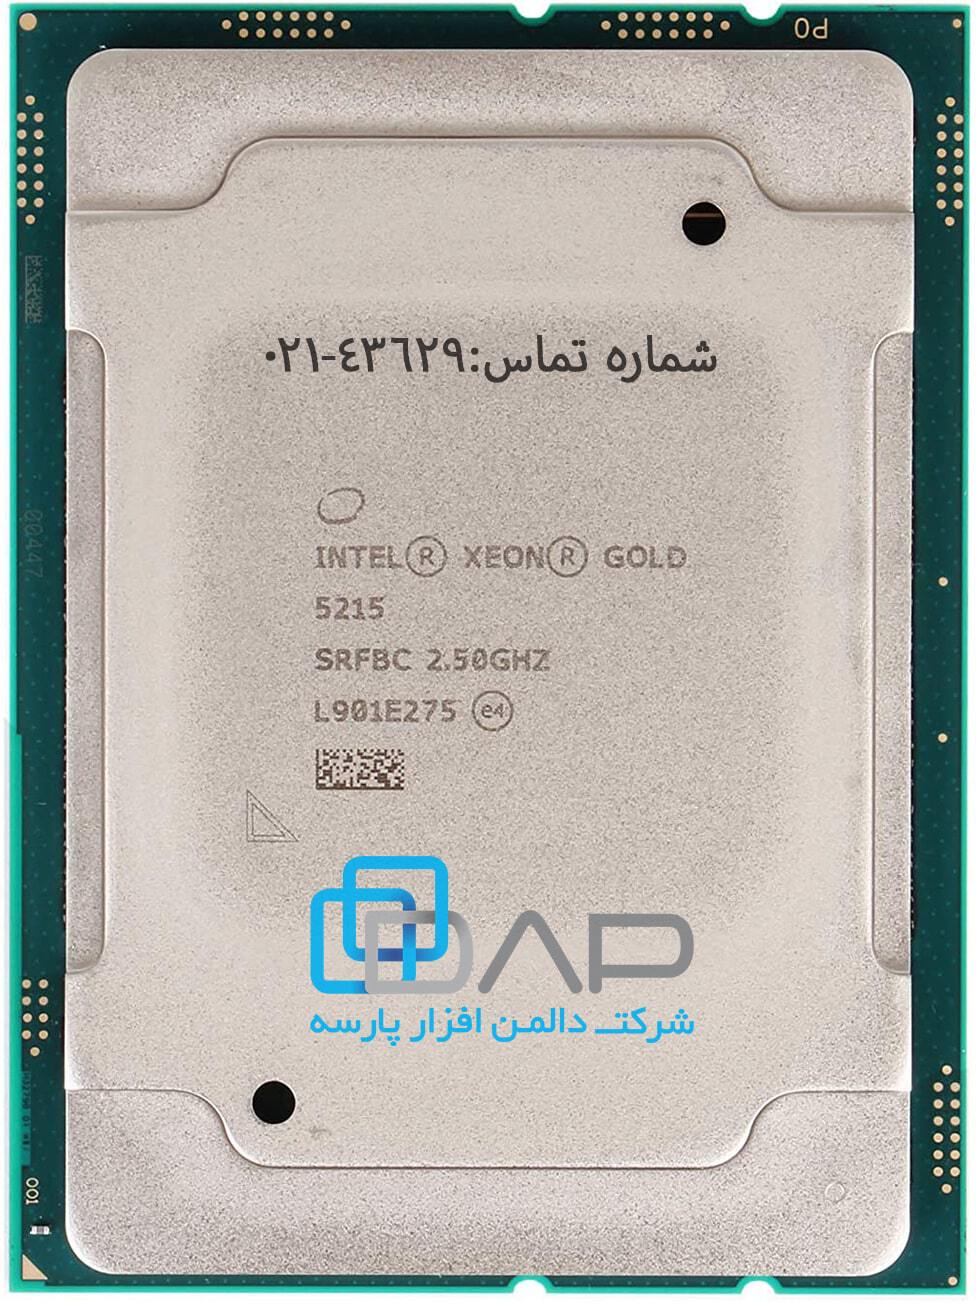  Intel CPU(Xeon-Gold 5215) 